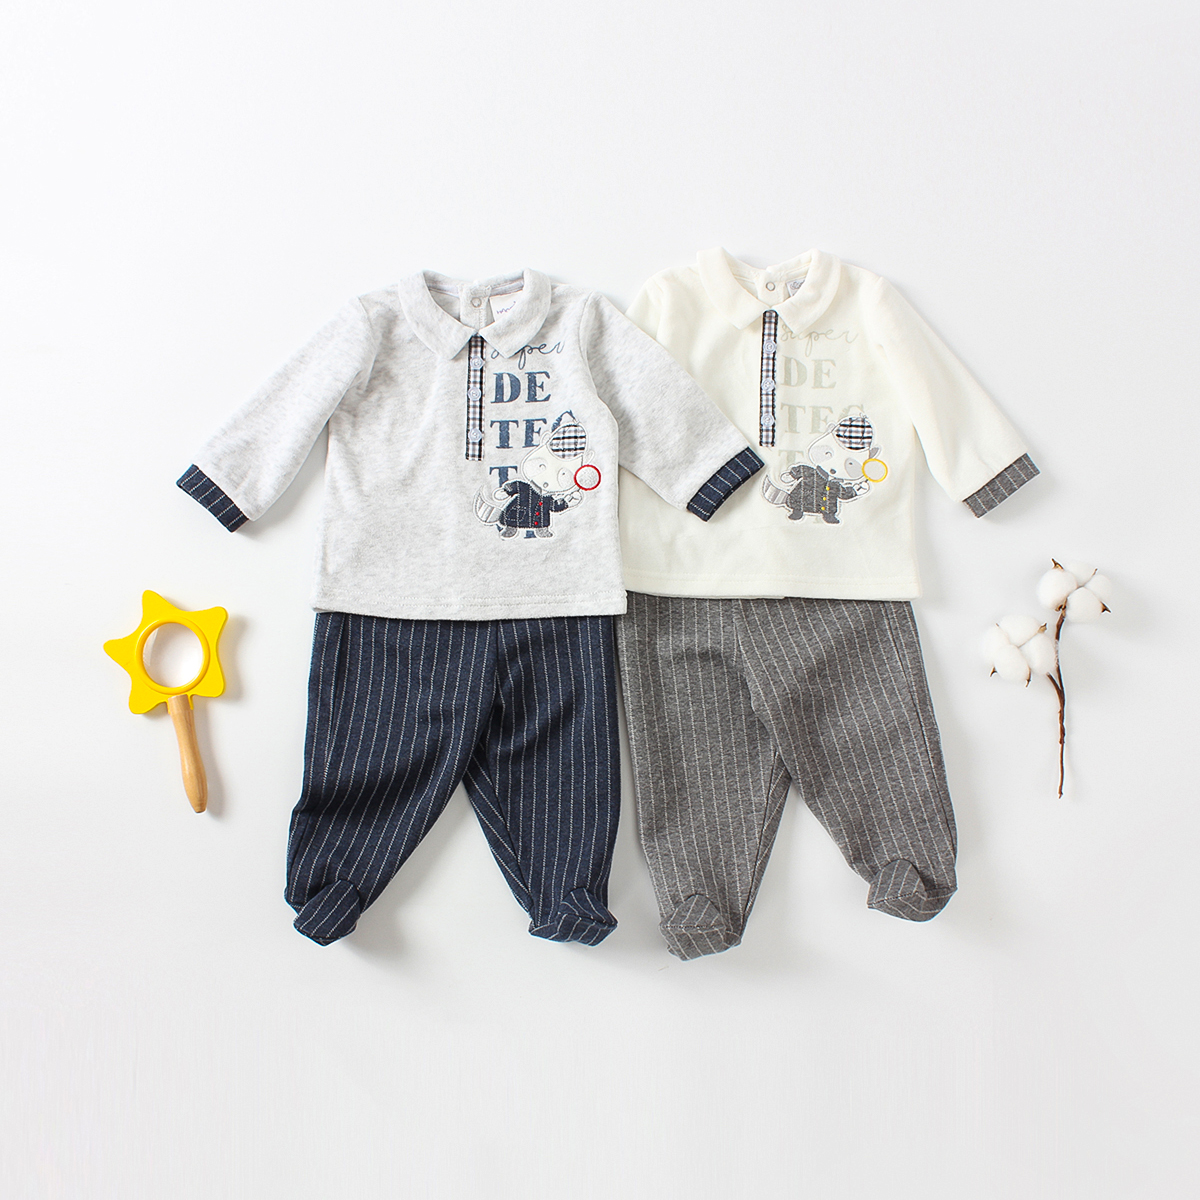 CO 4849 Wholesale 2 Pieces Baby Clothes Sets